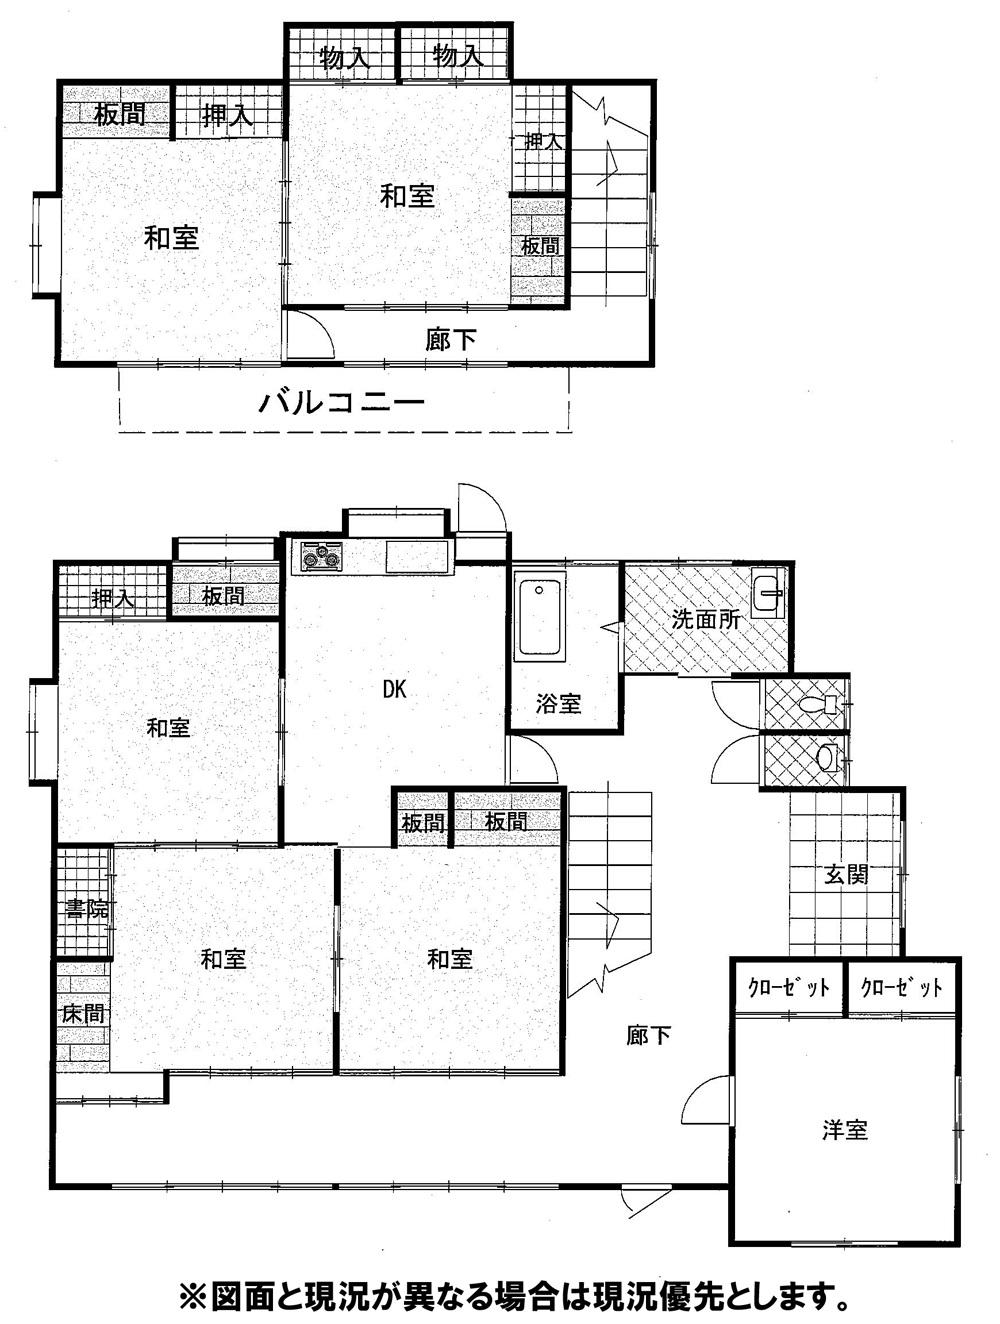 Floor plan. 18.4 million yen, 5DK, Land area 490.75 sq m , Building area 183.79 sq m 5DK